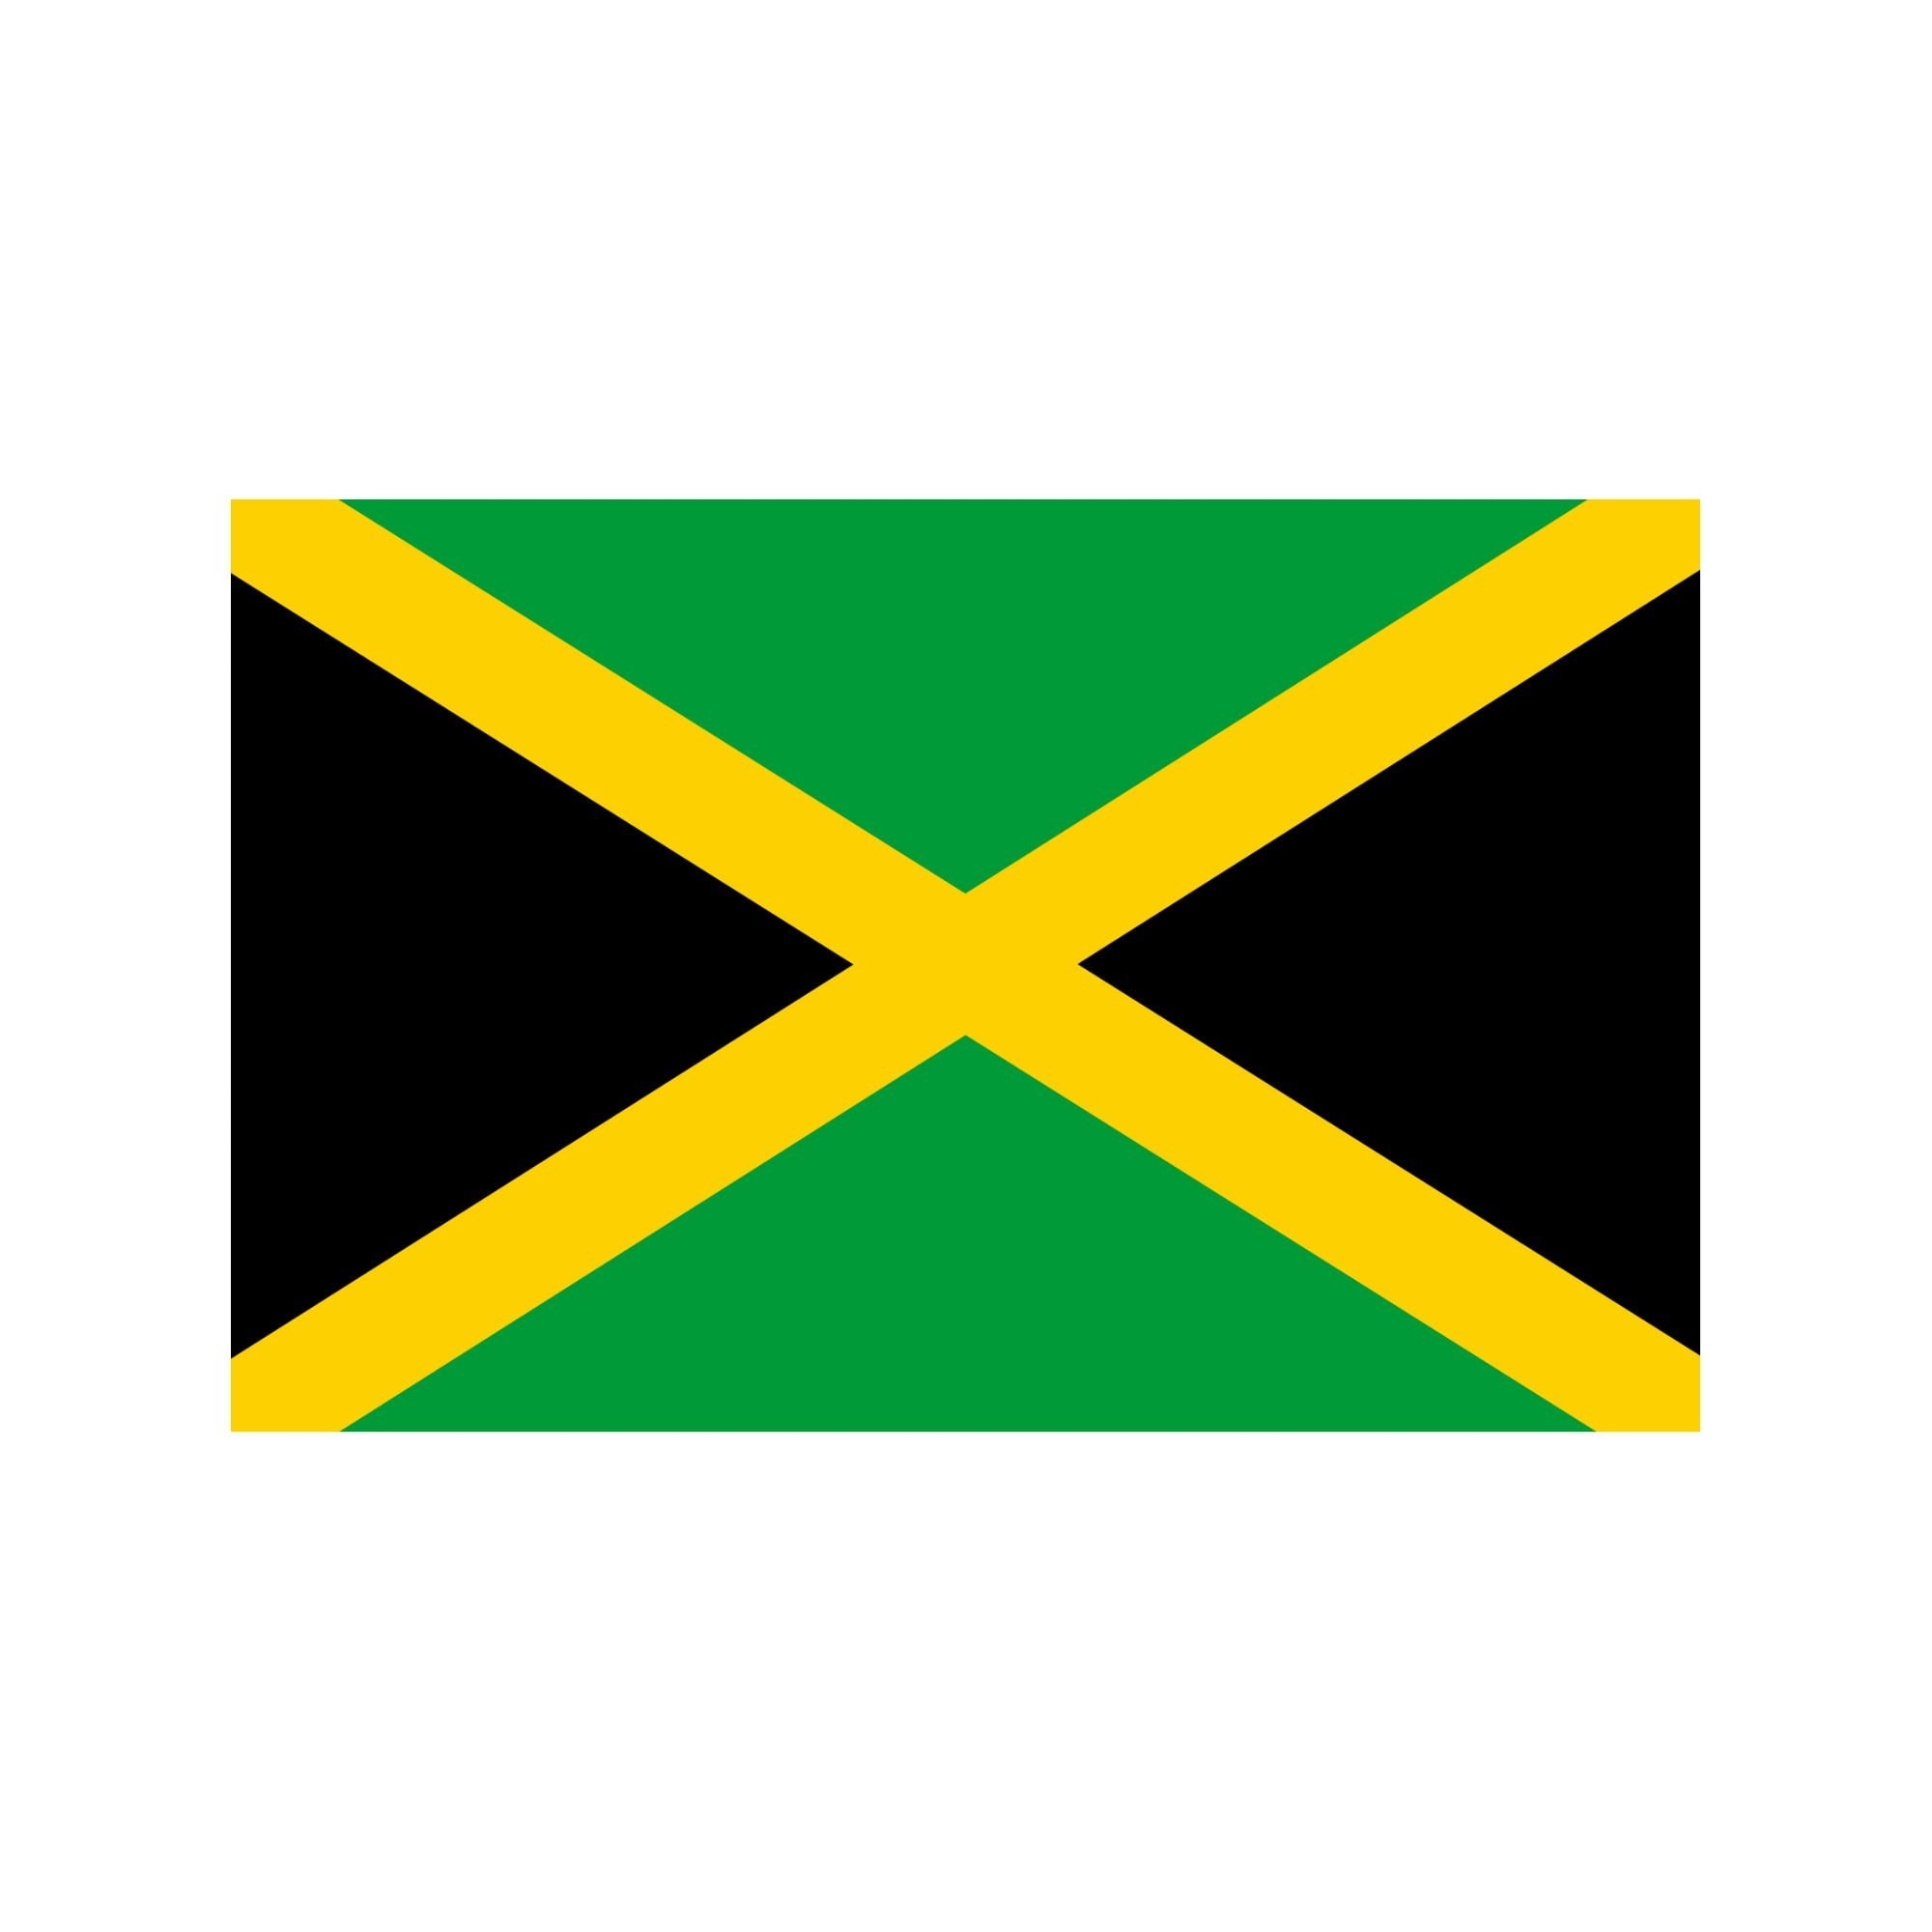 Jamaica Flag Svg Jamaica Flag Png Jamaican Flag Svg Jamaican Flag Png Jamaica Flag Image Jamaican Flag Image Jamaica Flag Jamaica Etsy Israel